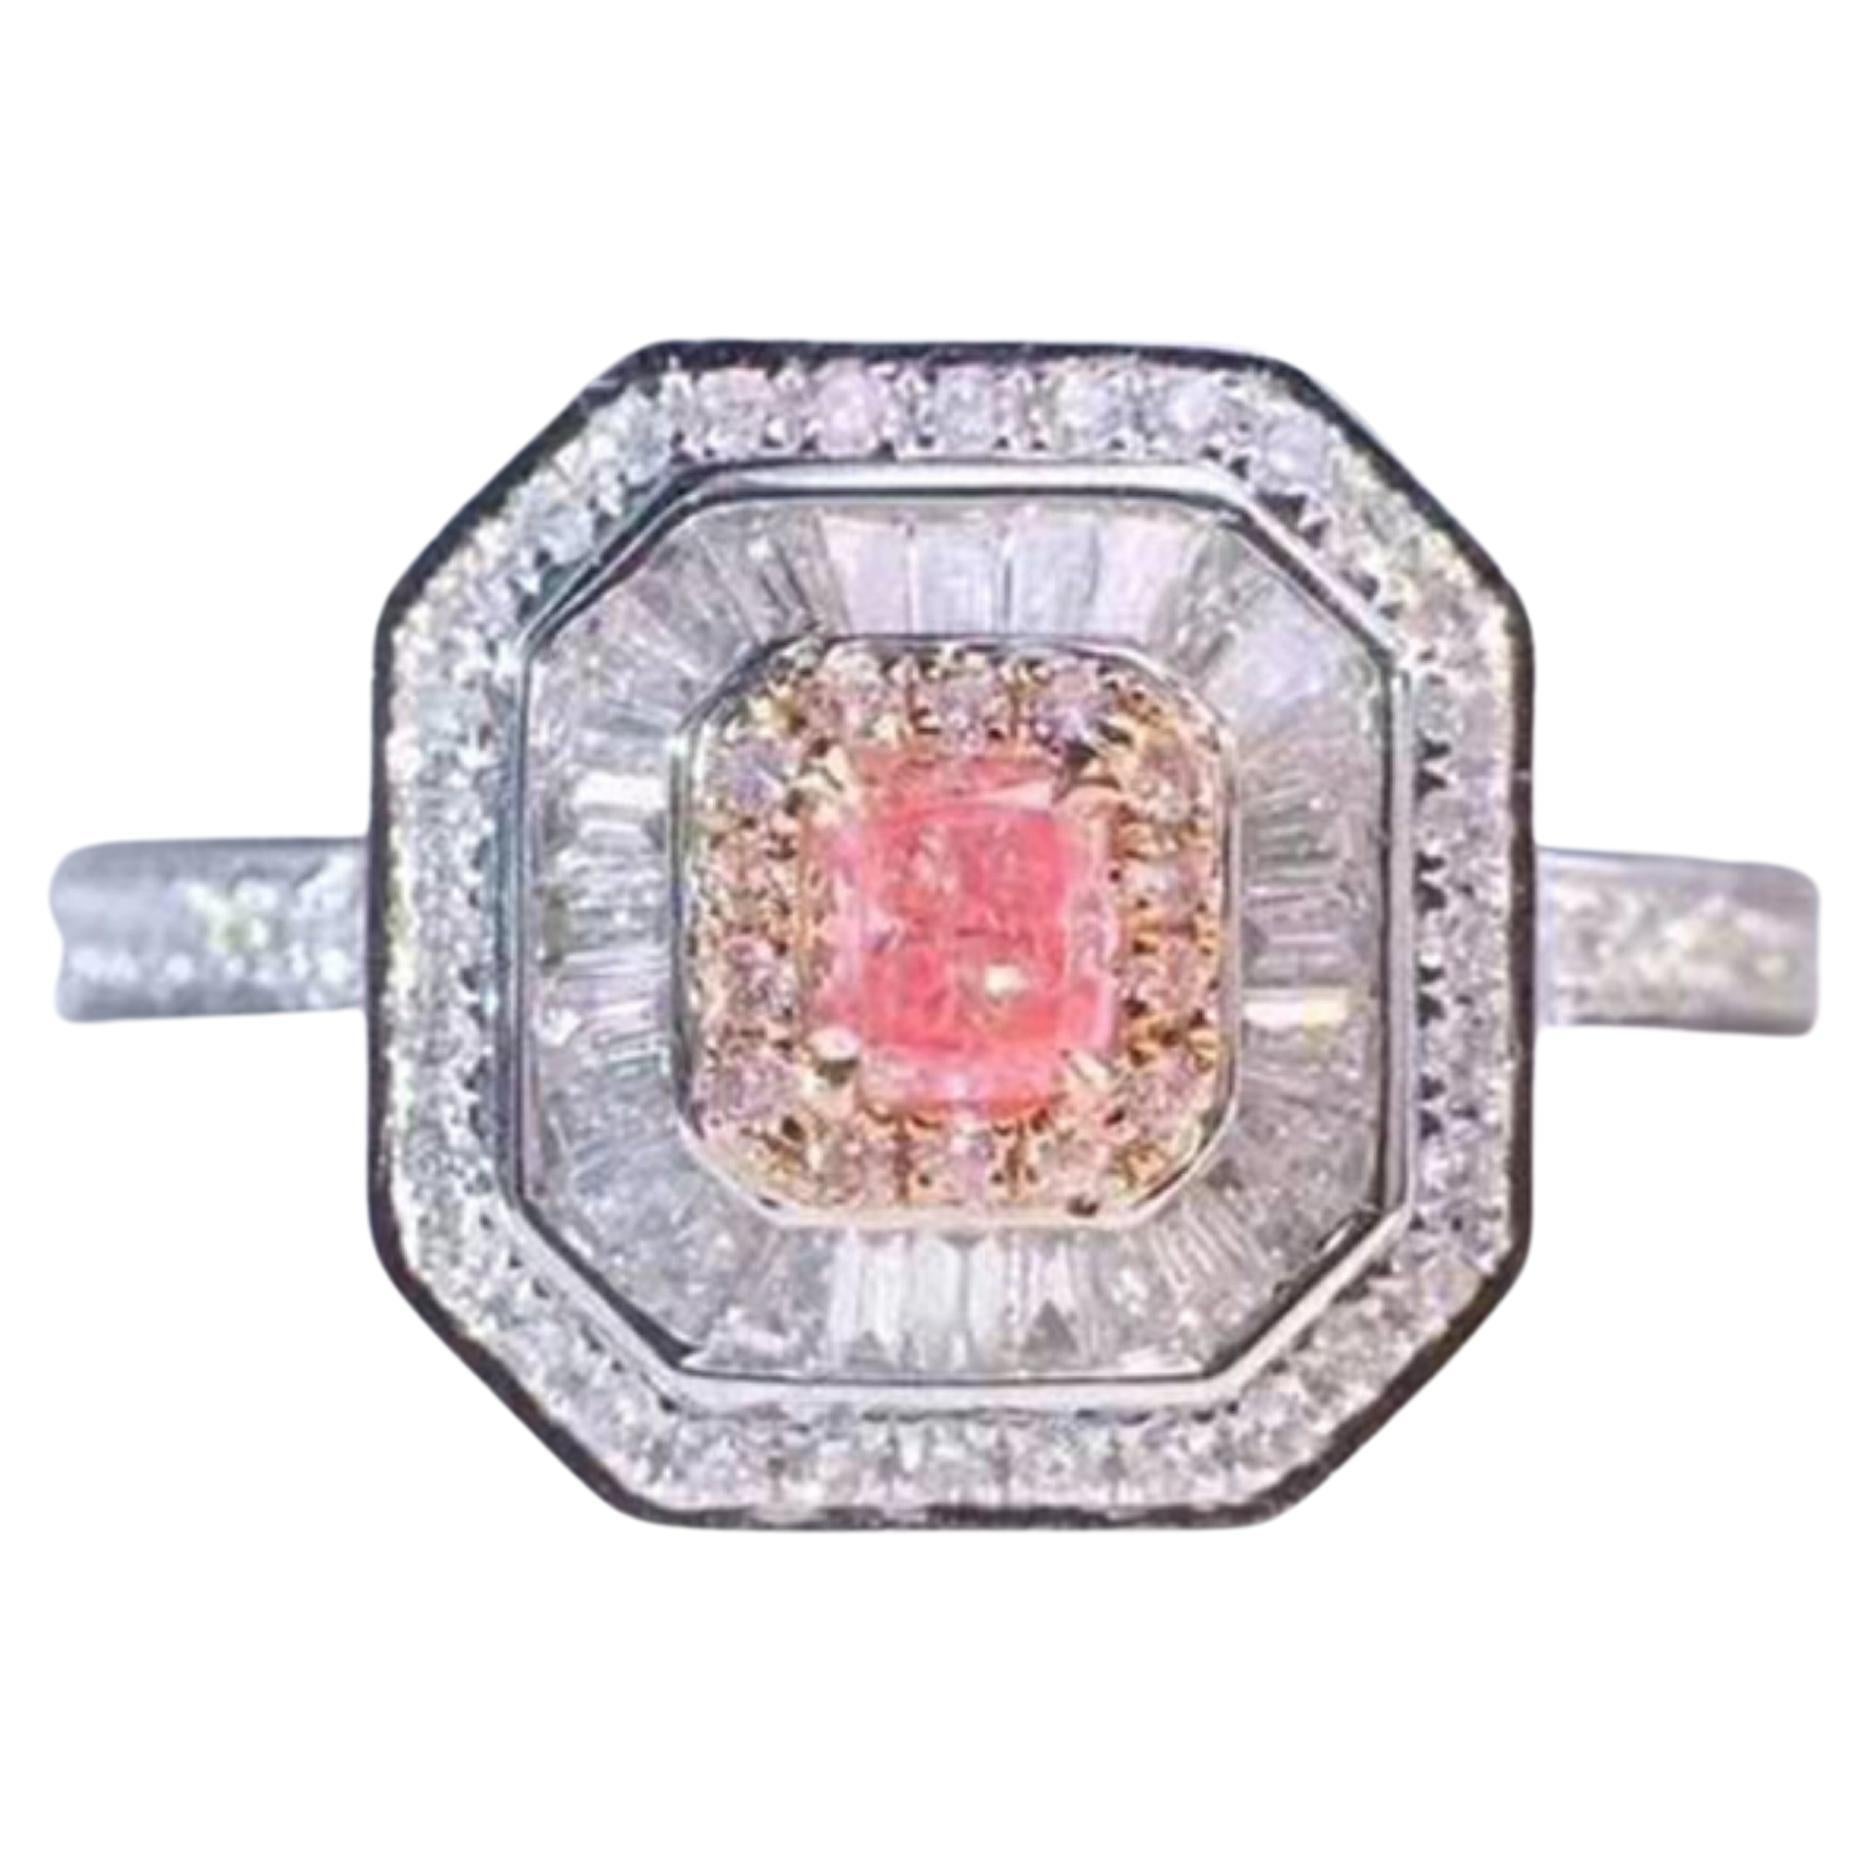 Fancy Pink Diamond Ring 18 Karat White Gold